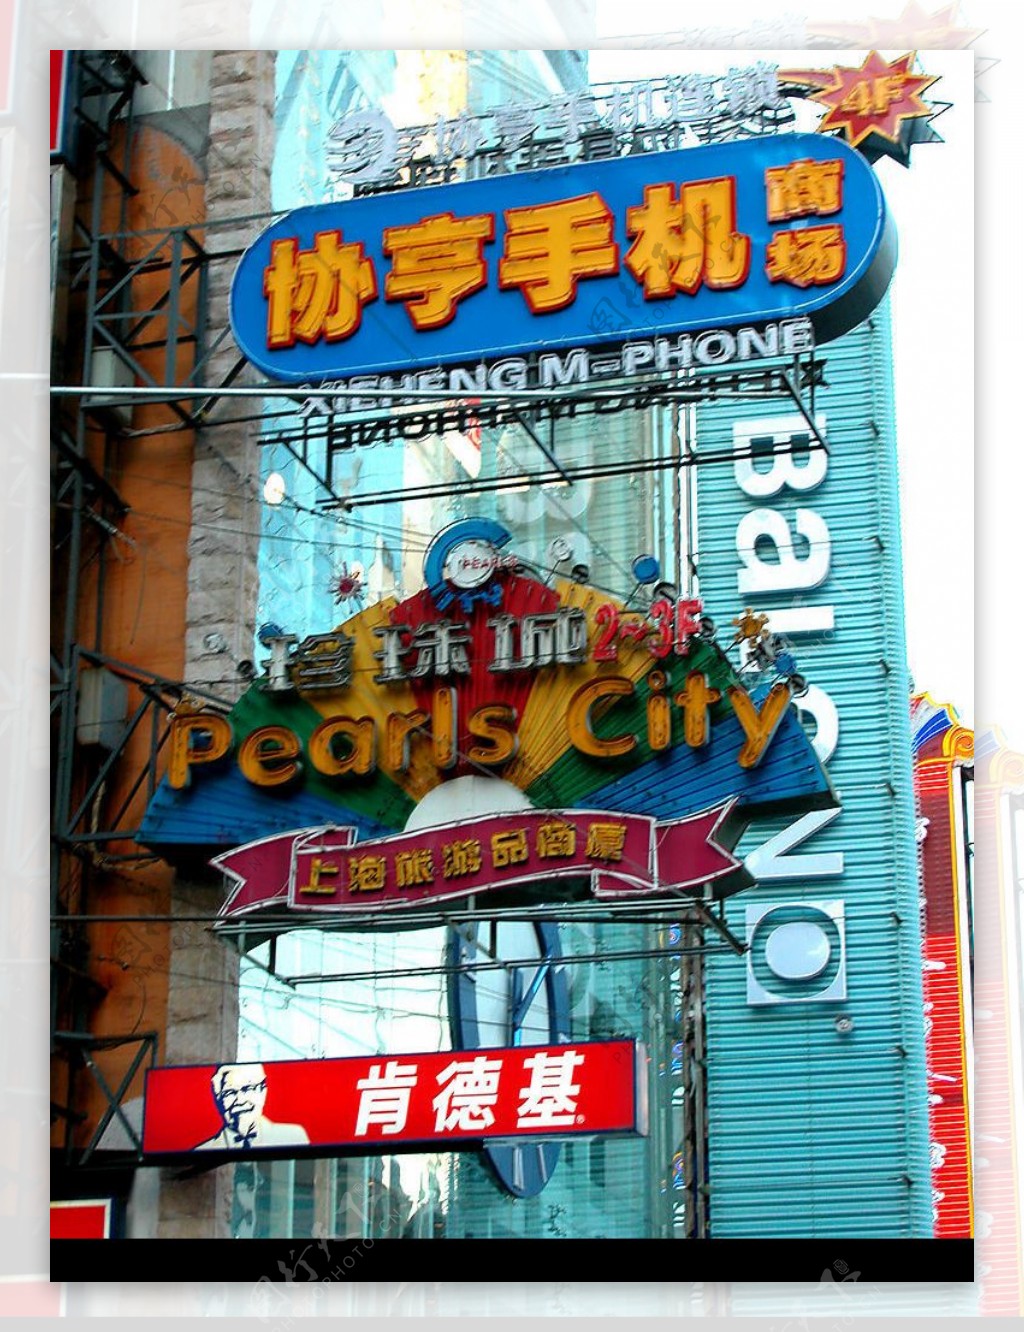 上海街景广告37图片